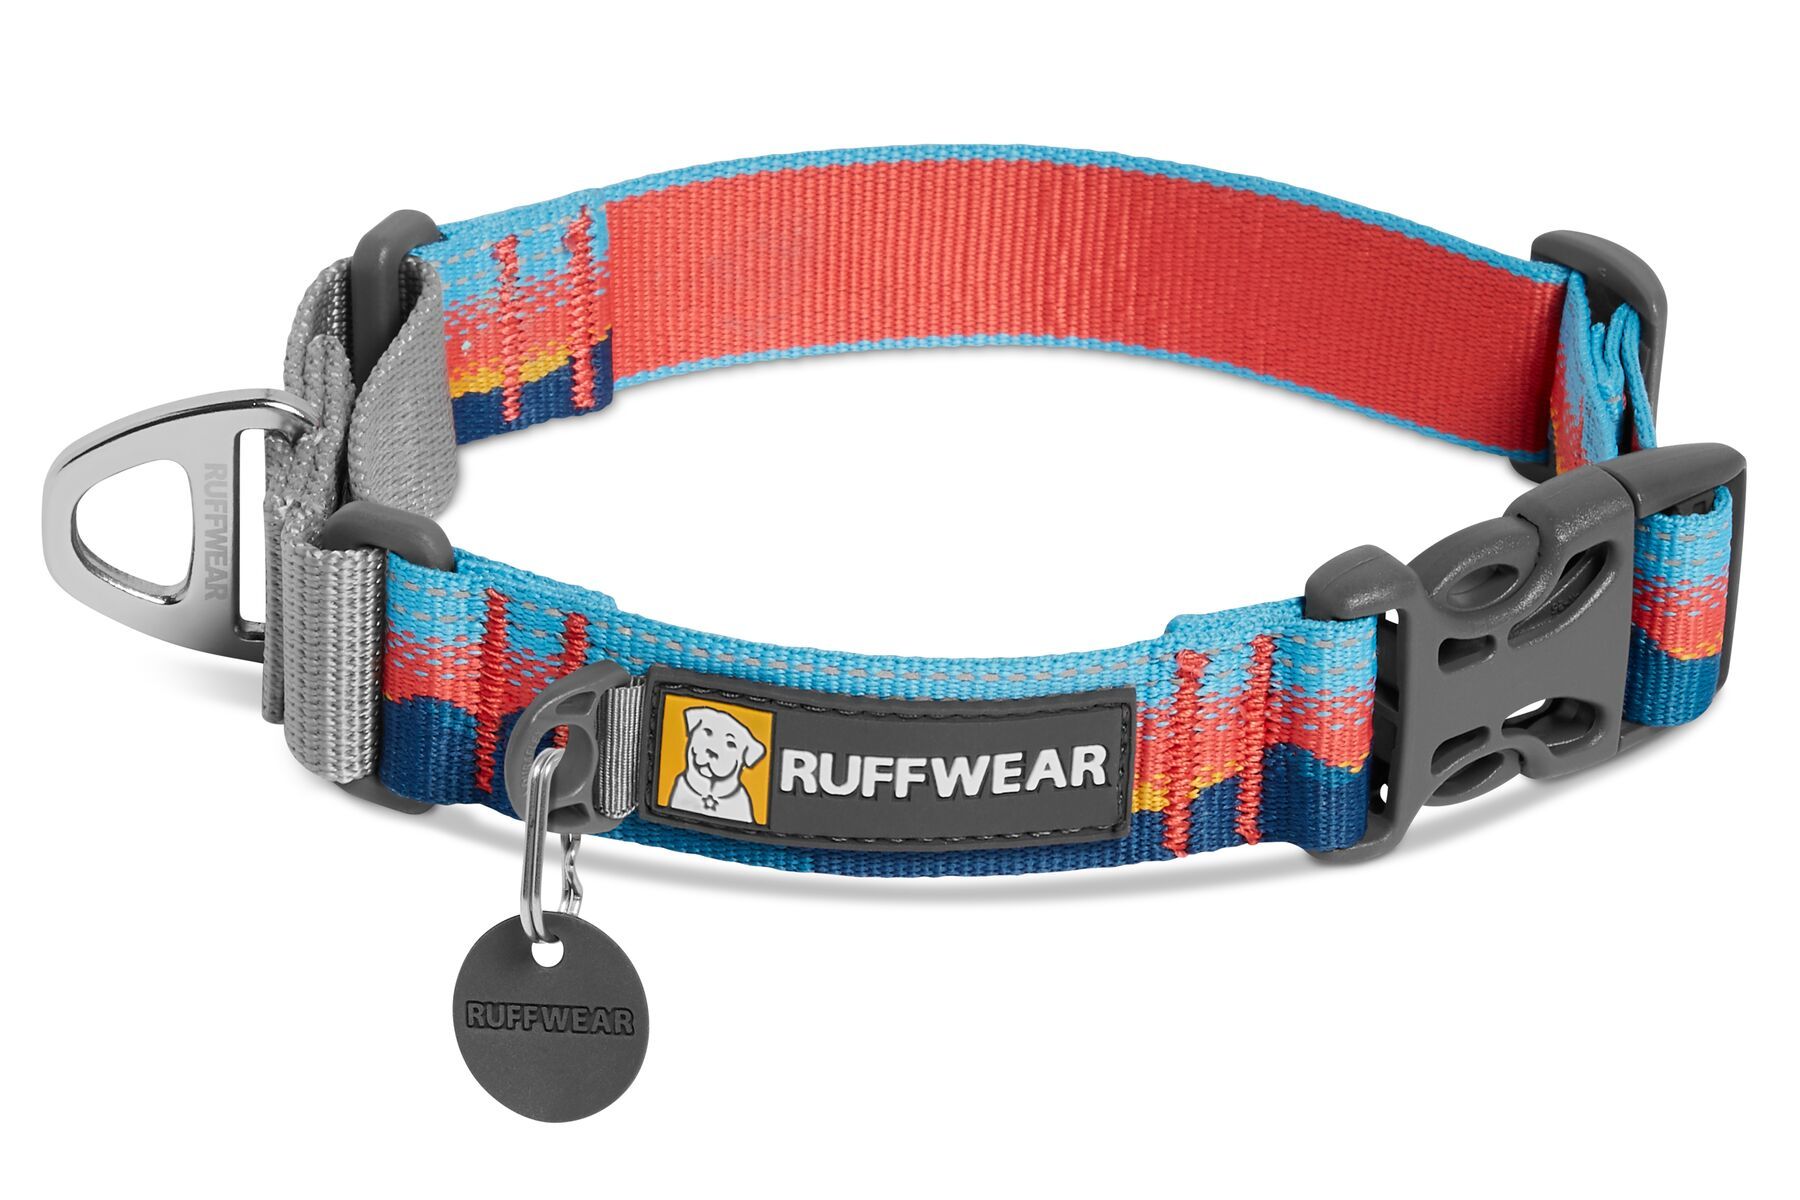 Ruffwear Web Reaction™ Reflective Buckled Martingale Dog Collar